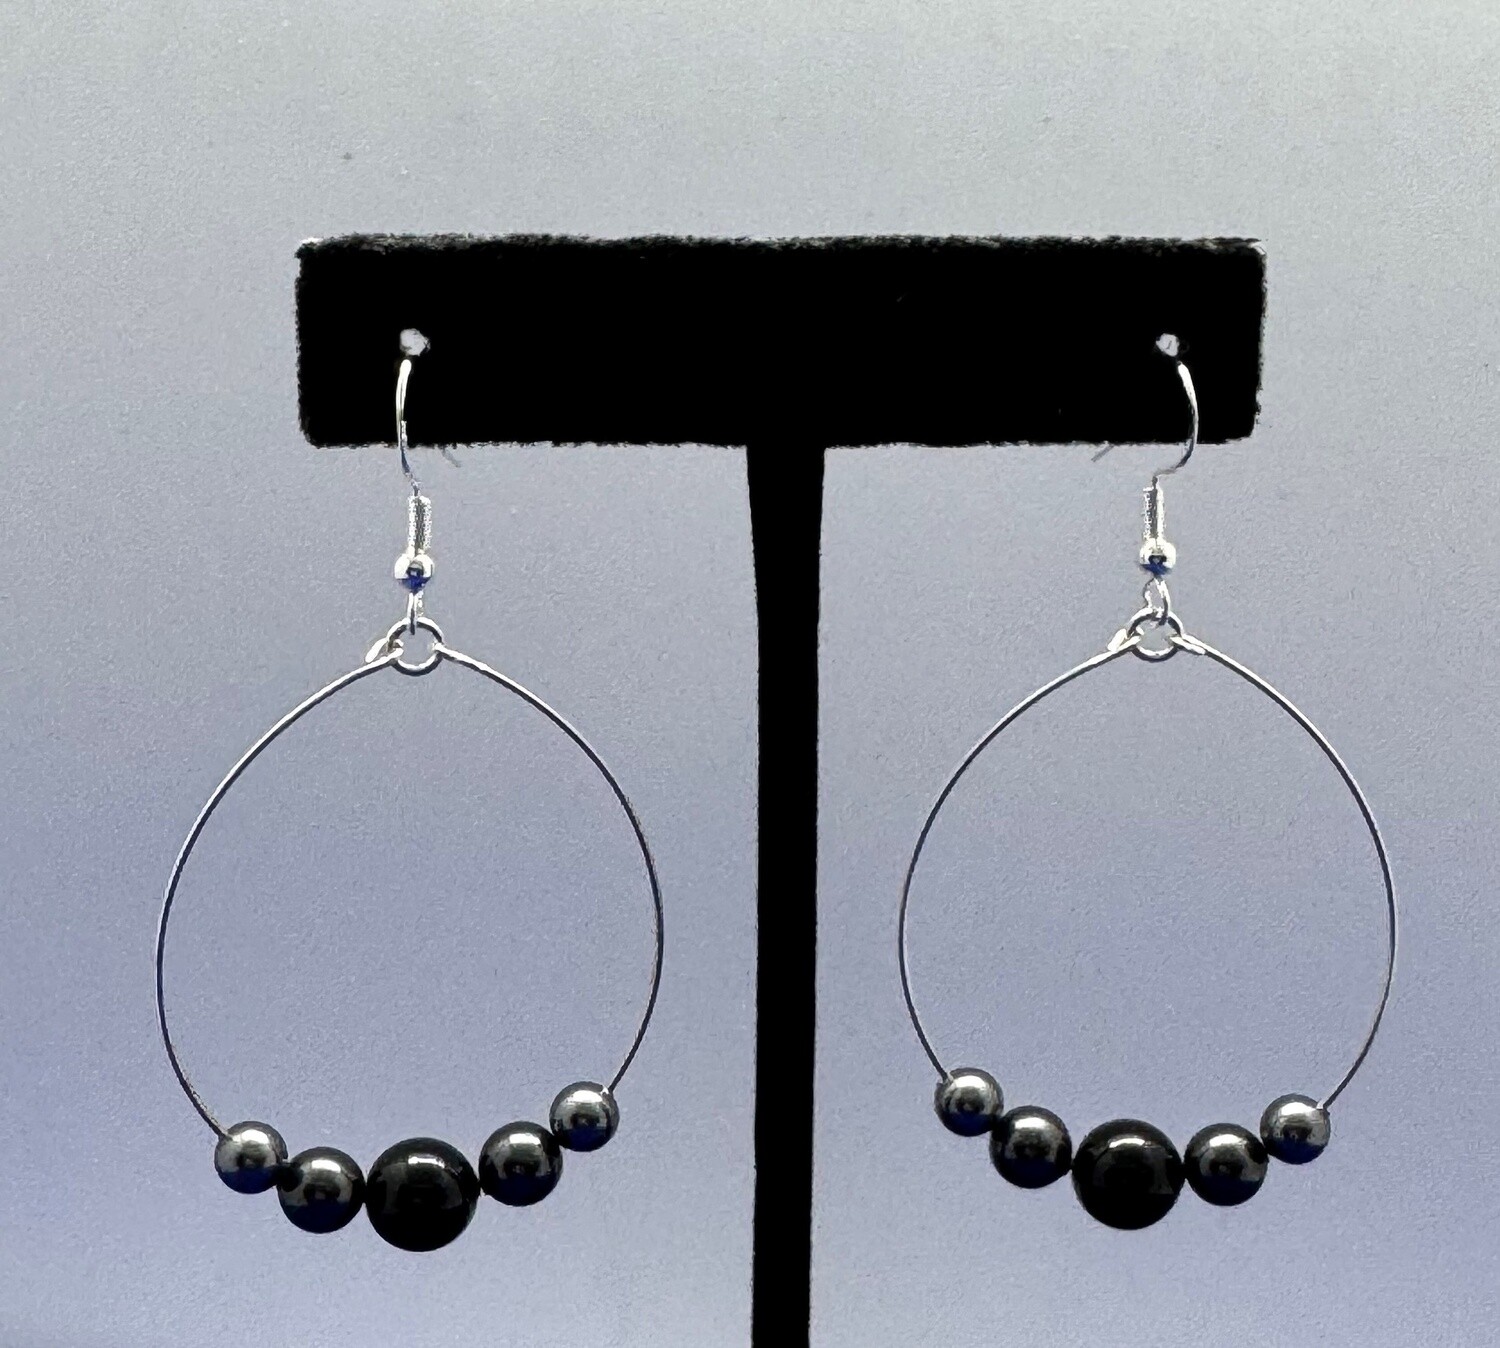 CA Jewelry Earring Hoop Swarovski Dk Gray and Black Pearls